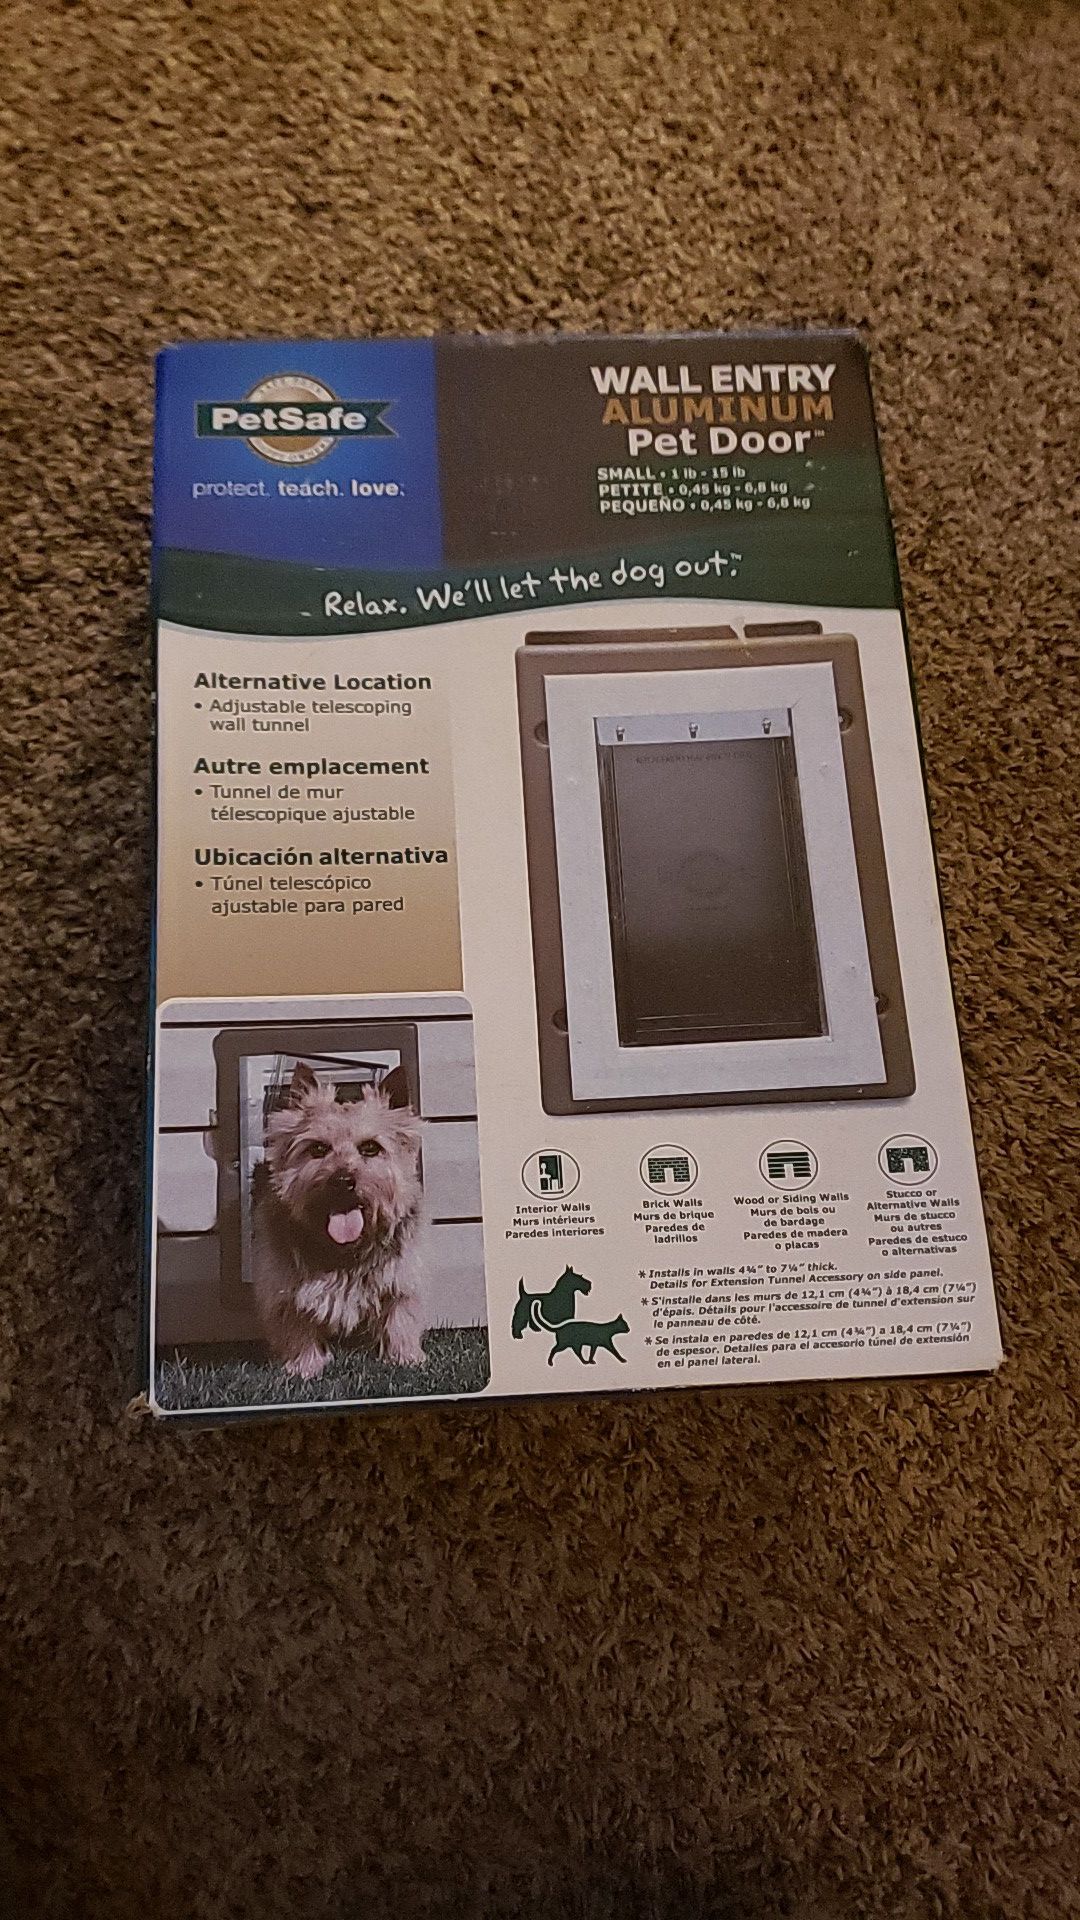 Petsafe small dog door